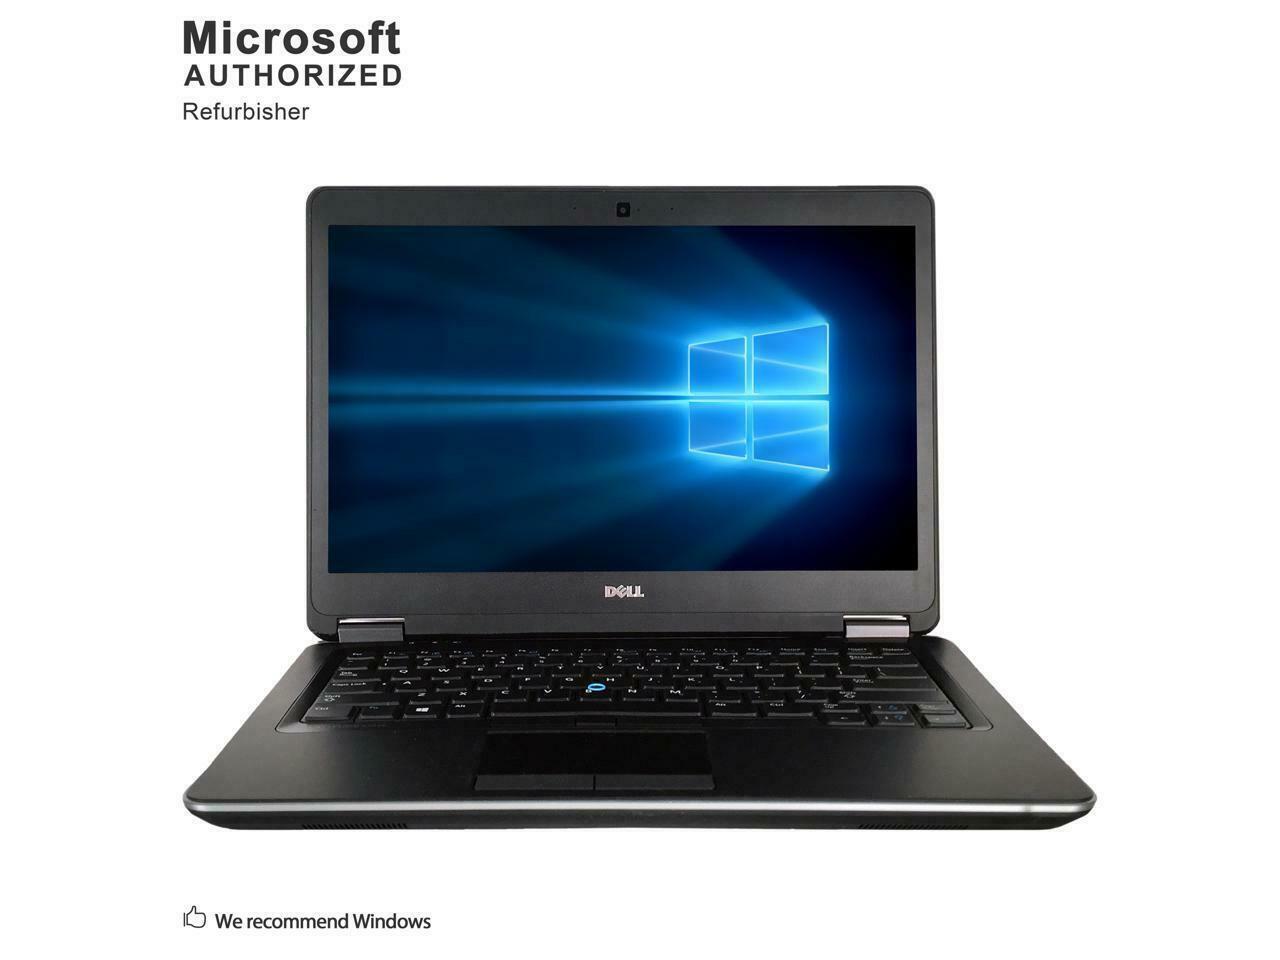 Dell Grade A Latitude E7440 Laptop, Intel Core I7 4600U 2.1GHz, 8G DDR3L, 512G S